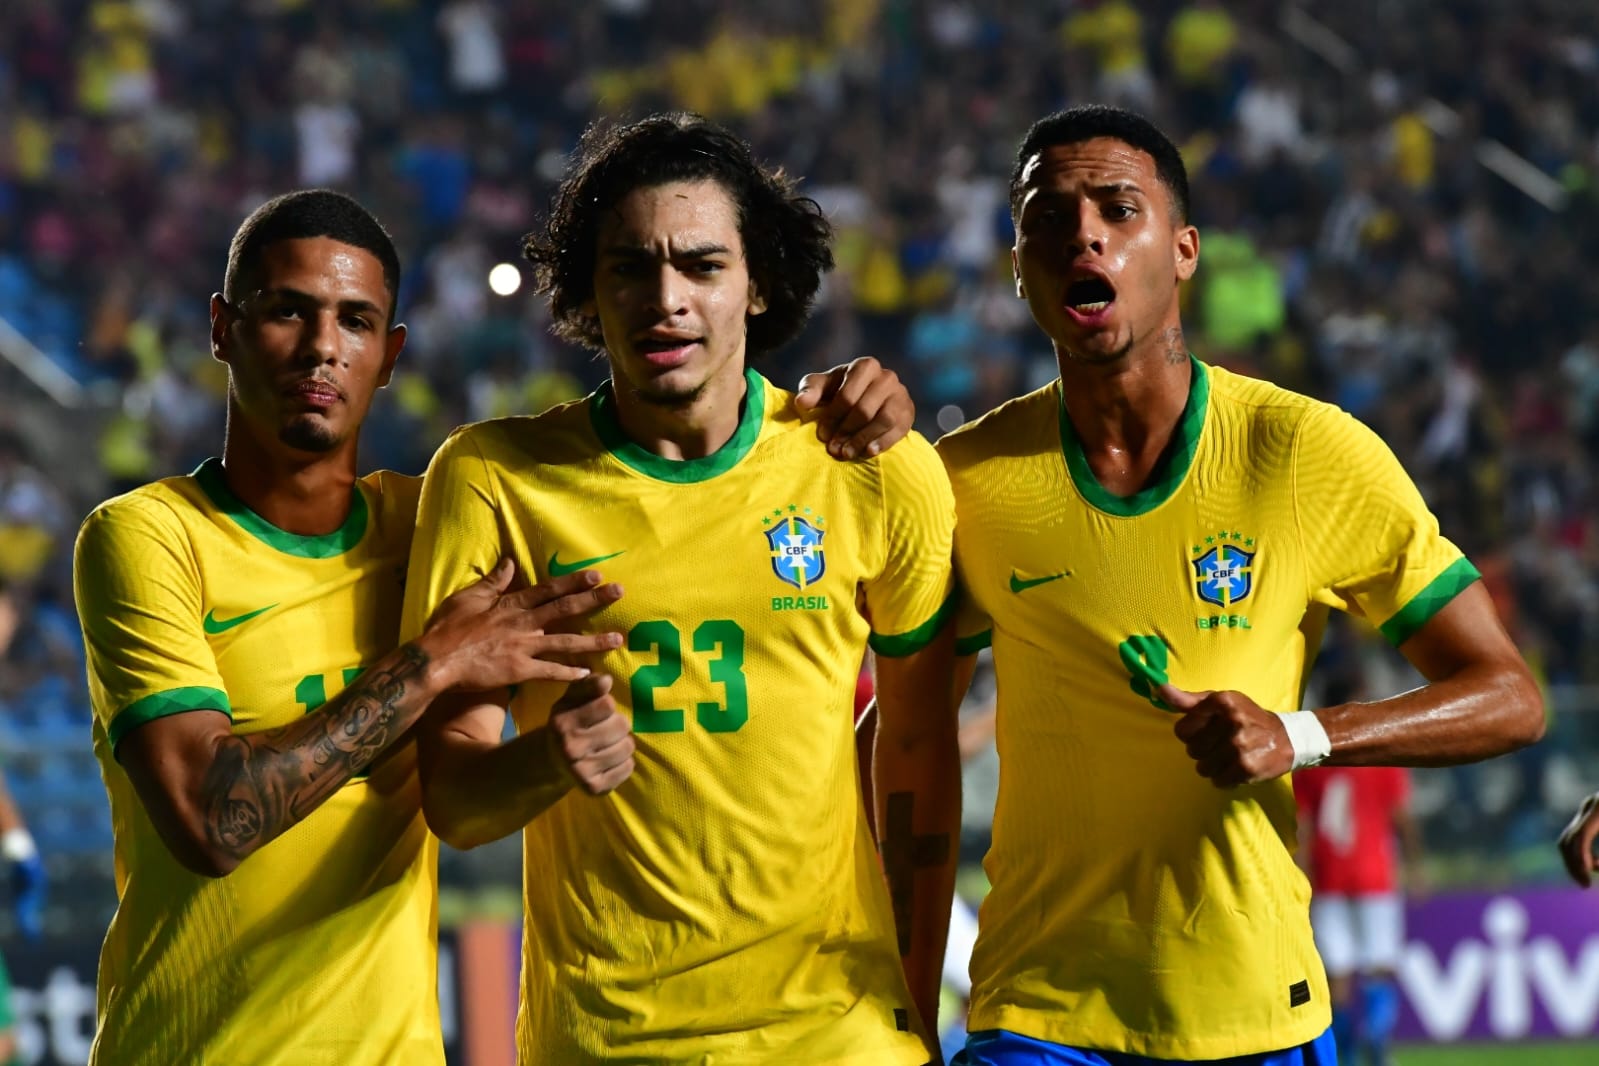 Quando é o próximo jogo da seleção brasileira sub-20?